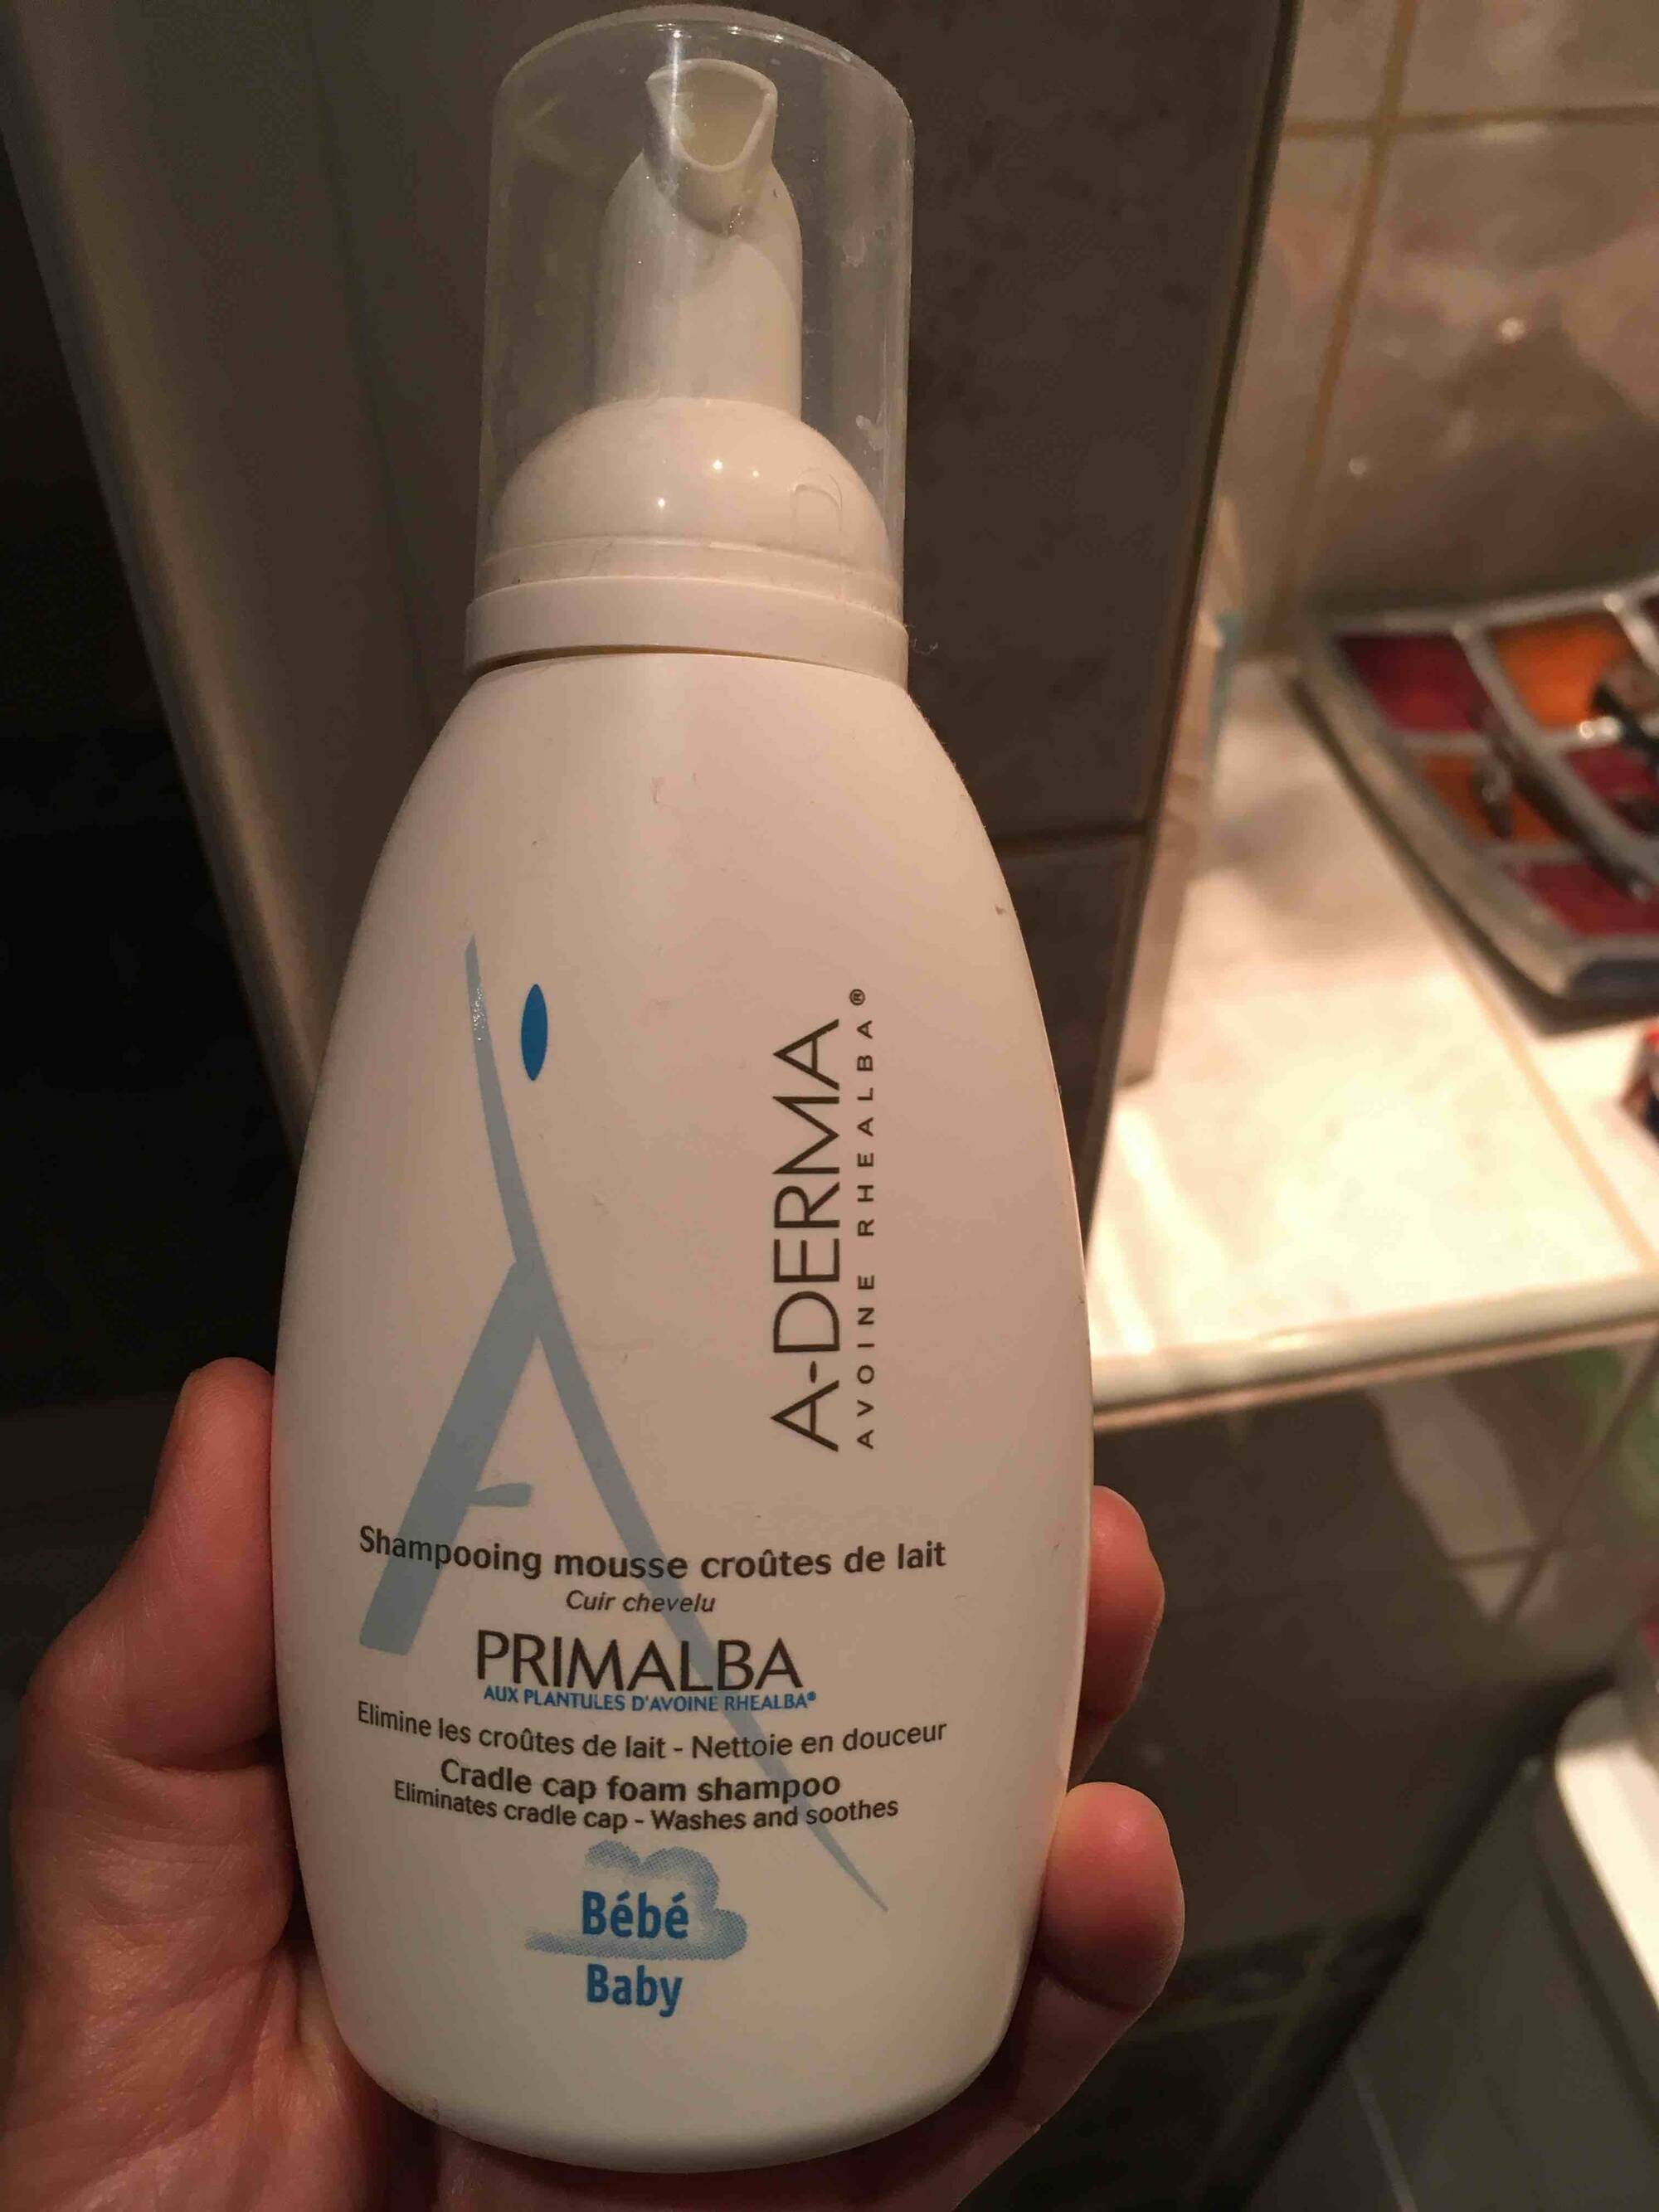 A-DERMA - Primalba - Shampooing mousse croûtes de lait